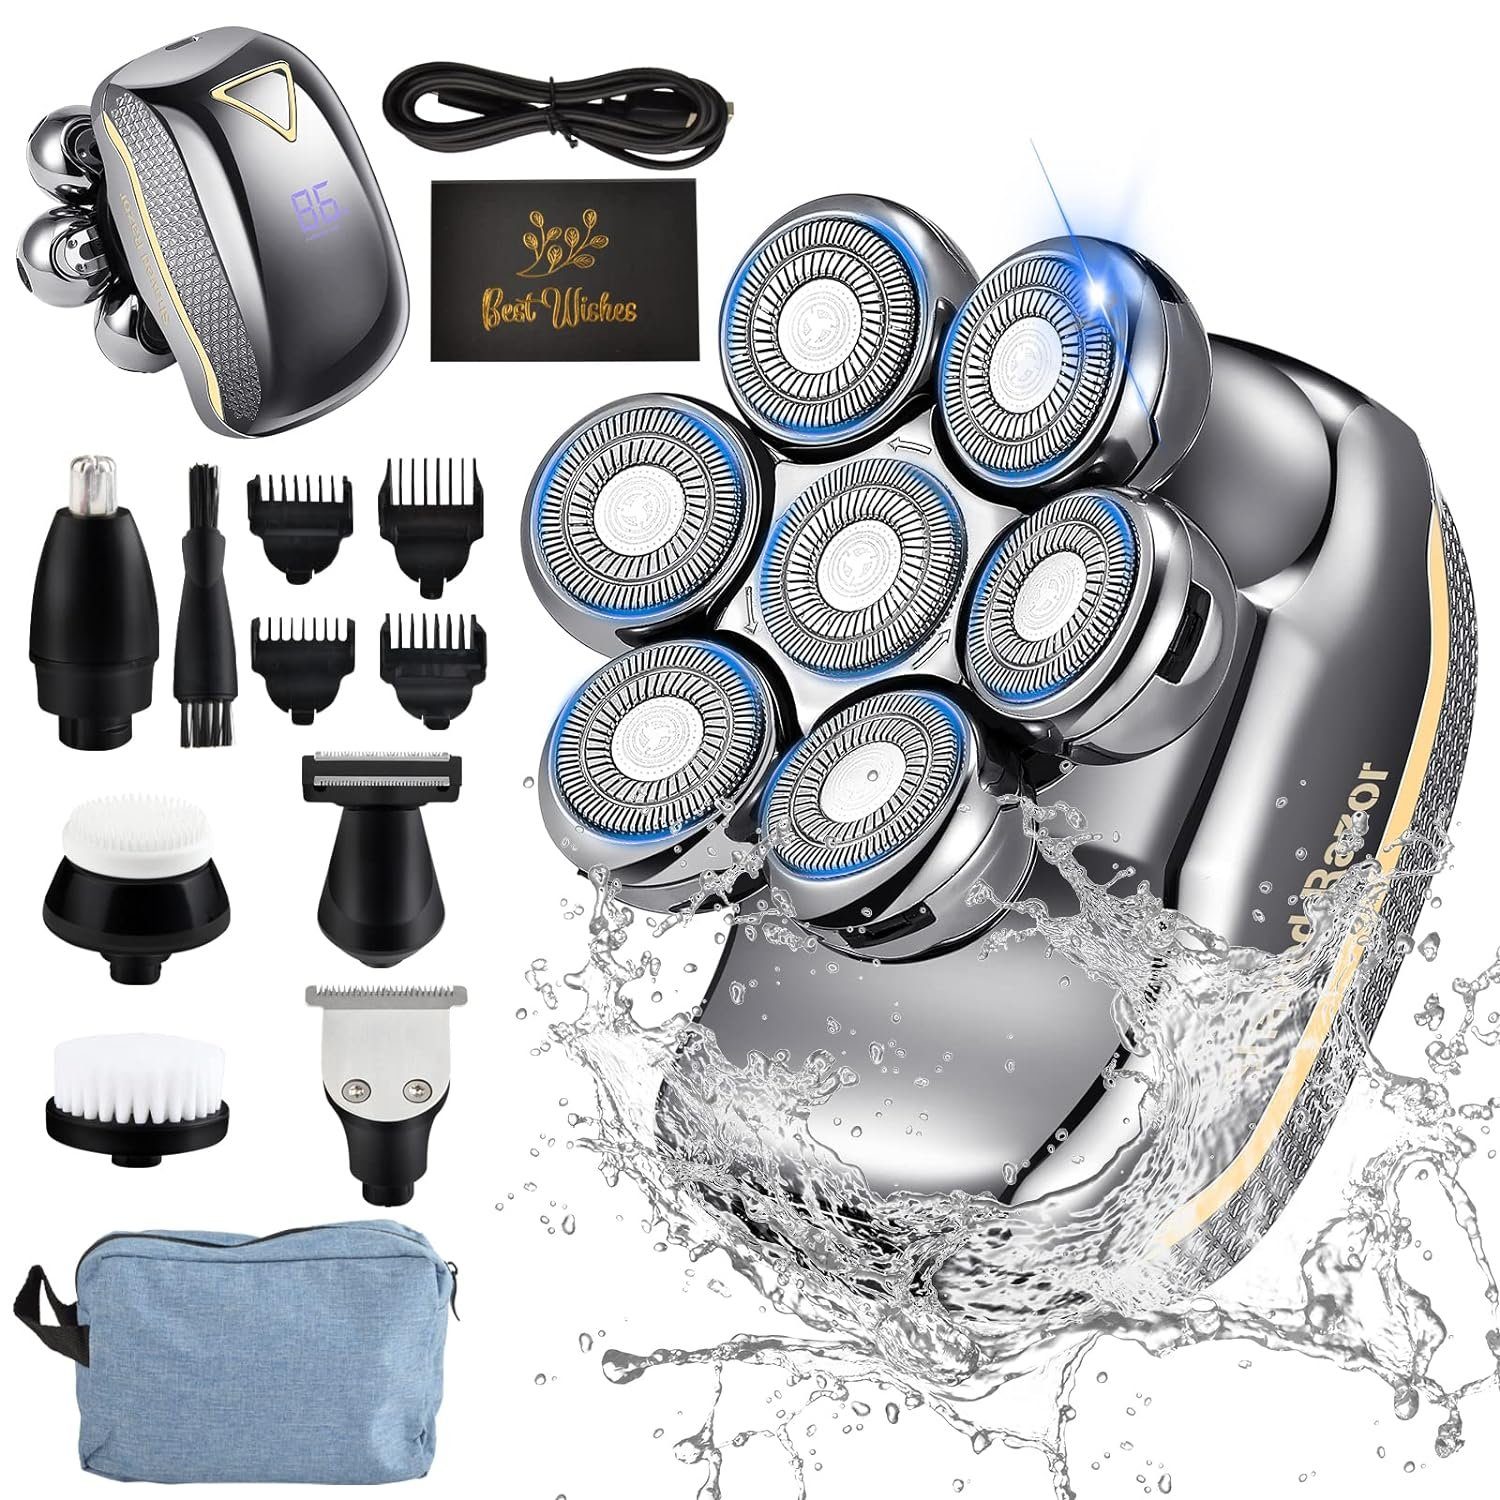 7D Wasserdichter Kopf- mit für Männer Reisetasche, Weihnachtsgeschenk Elektrorasierer (3/6/9/12mm)., 6-in-1 Rasierer Haarschneider Nasenhaartrimmer, Gesichtsreinigungsbürste, - Nass/Trocken, - Männer, 6, Wiederaufladbar, 7D mit LED-Display, Gesichtsmassage, Aufsätze: und und Männer keystar Köpfe, glatzköpfige Kopfrasierer Haartrimmerkämme inklusive für für für Pflegeset Elektrorasierer Präzision+Komfort, Haartrimmer, glatte Rasierapparat, Herren Ganz Gesichtspflege